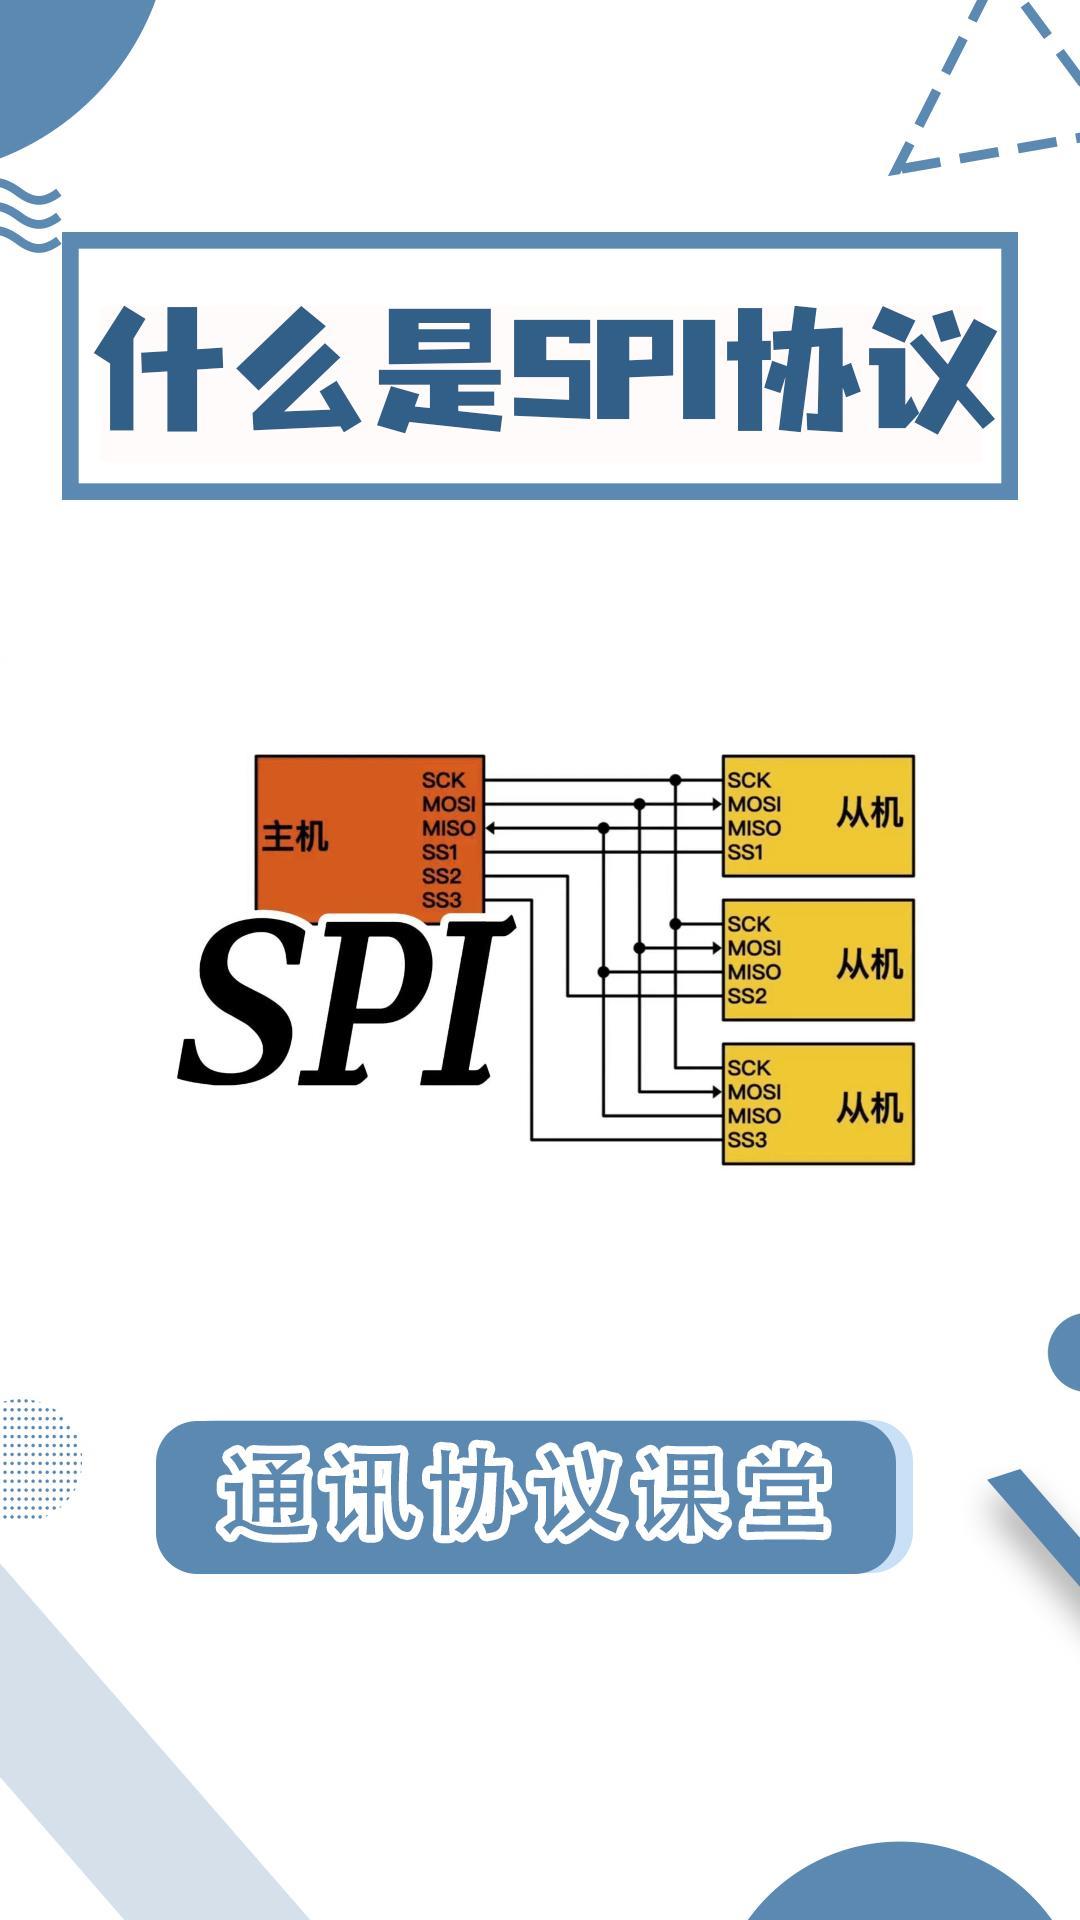 SPI通讯协议你真的懂吗？5分钟教#SPI #总线 #串口通讯 #通讯 #电路知识 #电子工程师 #科工机械 